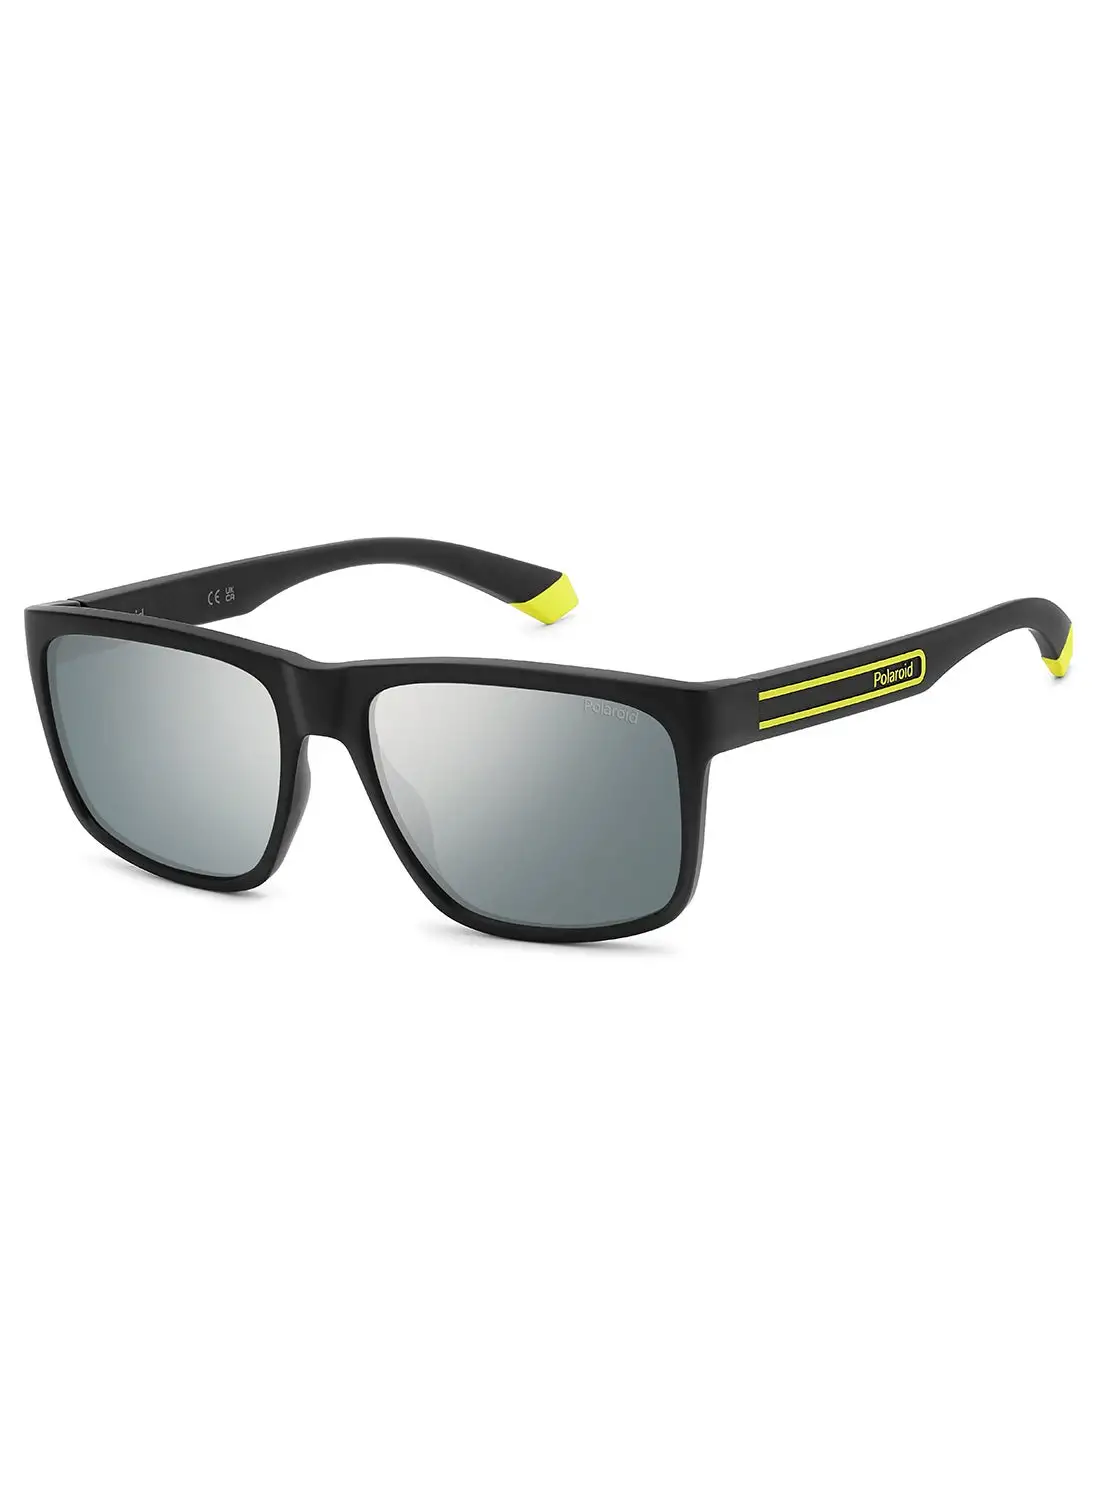 Polaroid Men's Polarized Rectangular Sunglasses - Pld 2149/S Black Millimeter - Lens Size: 57 Mm